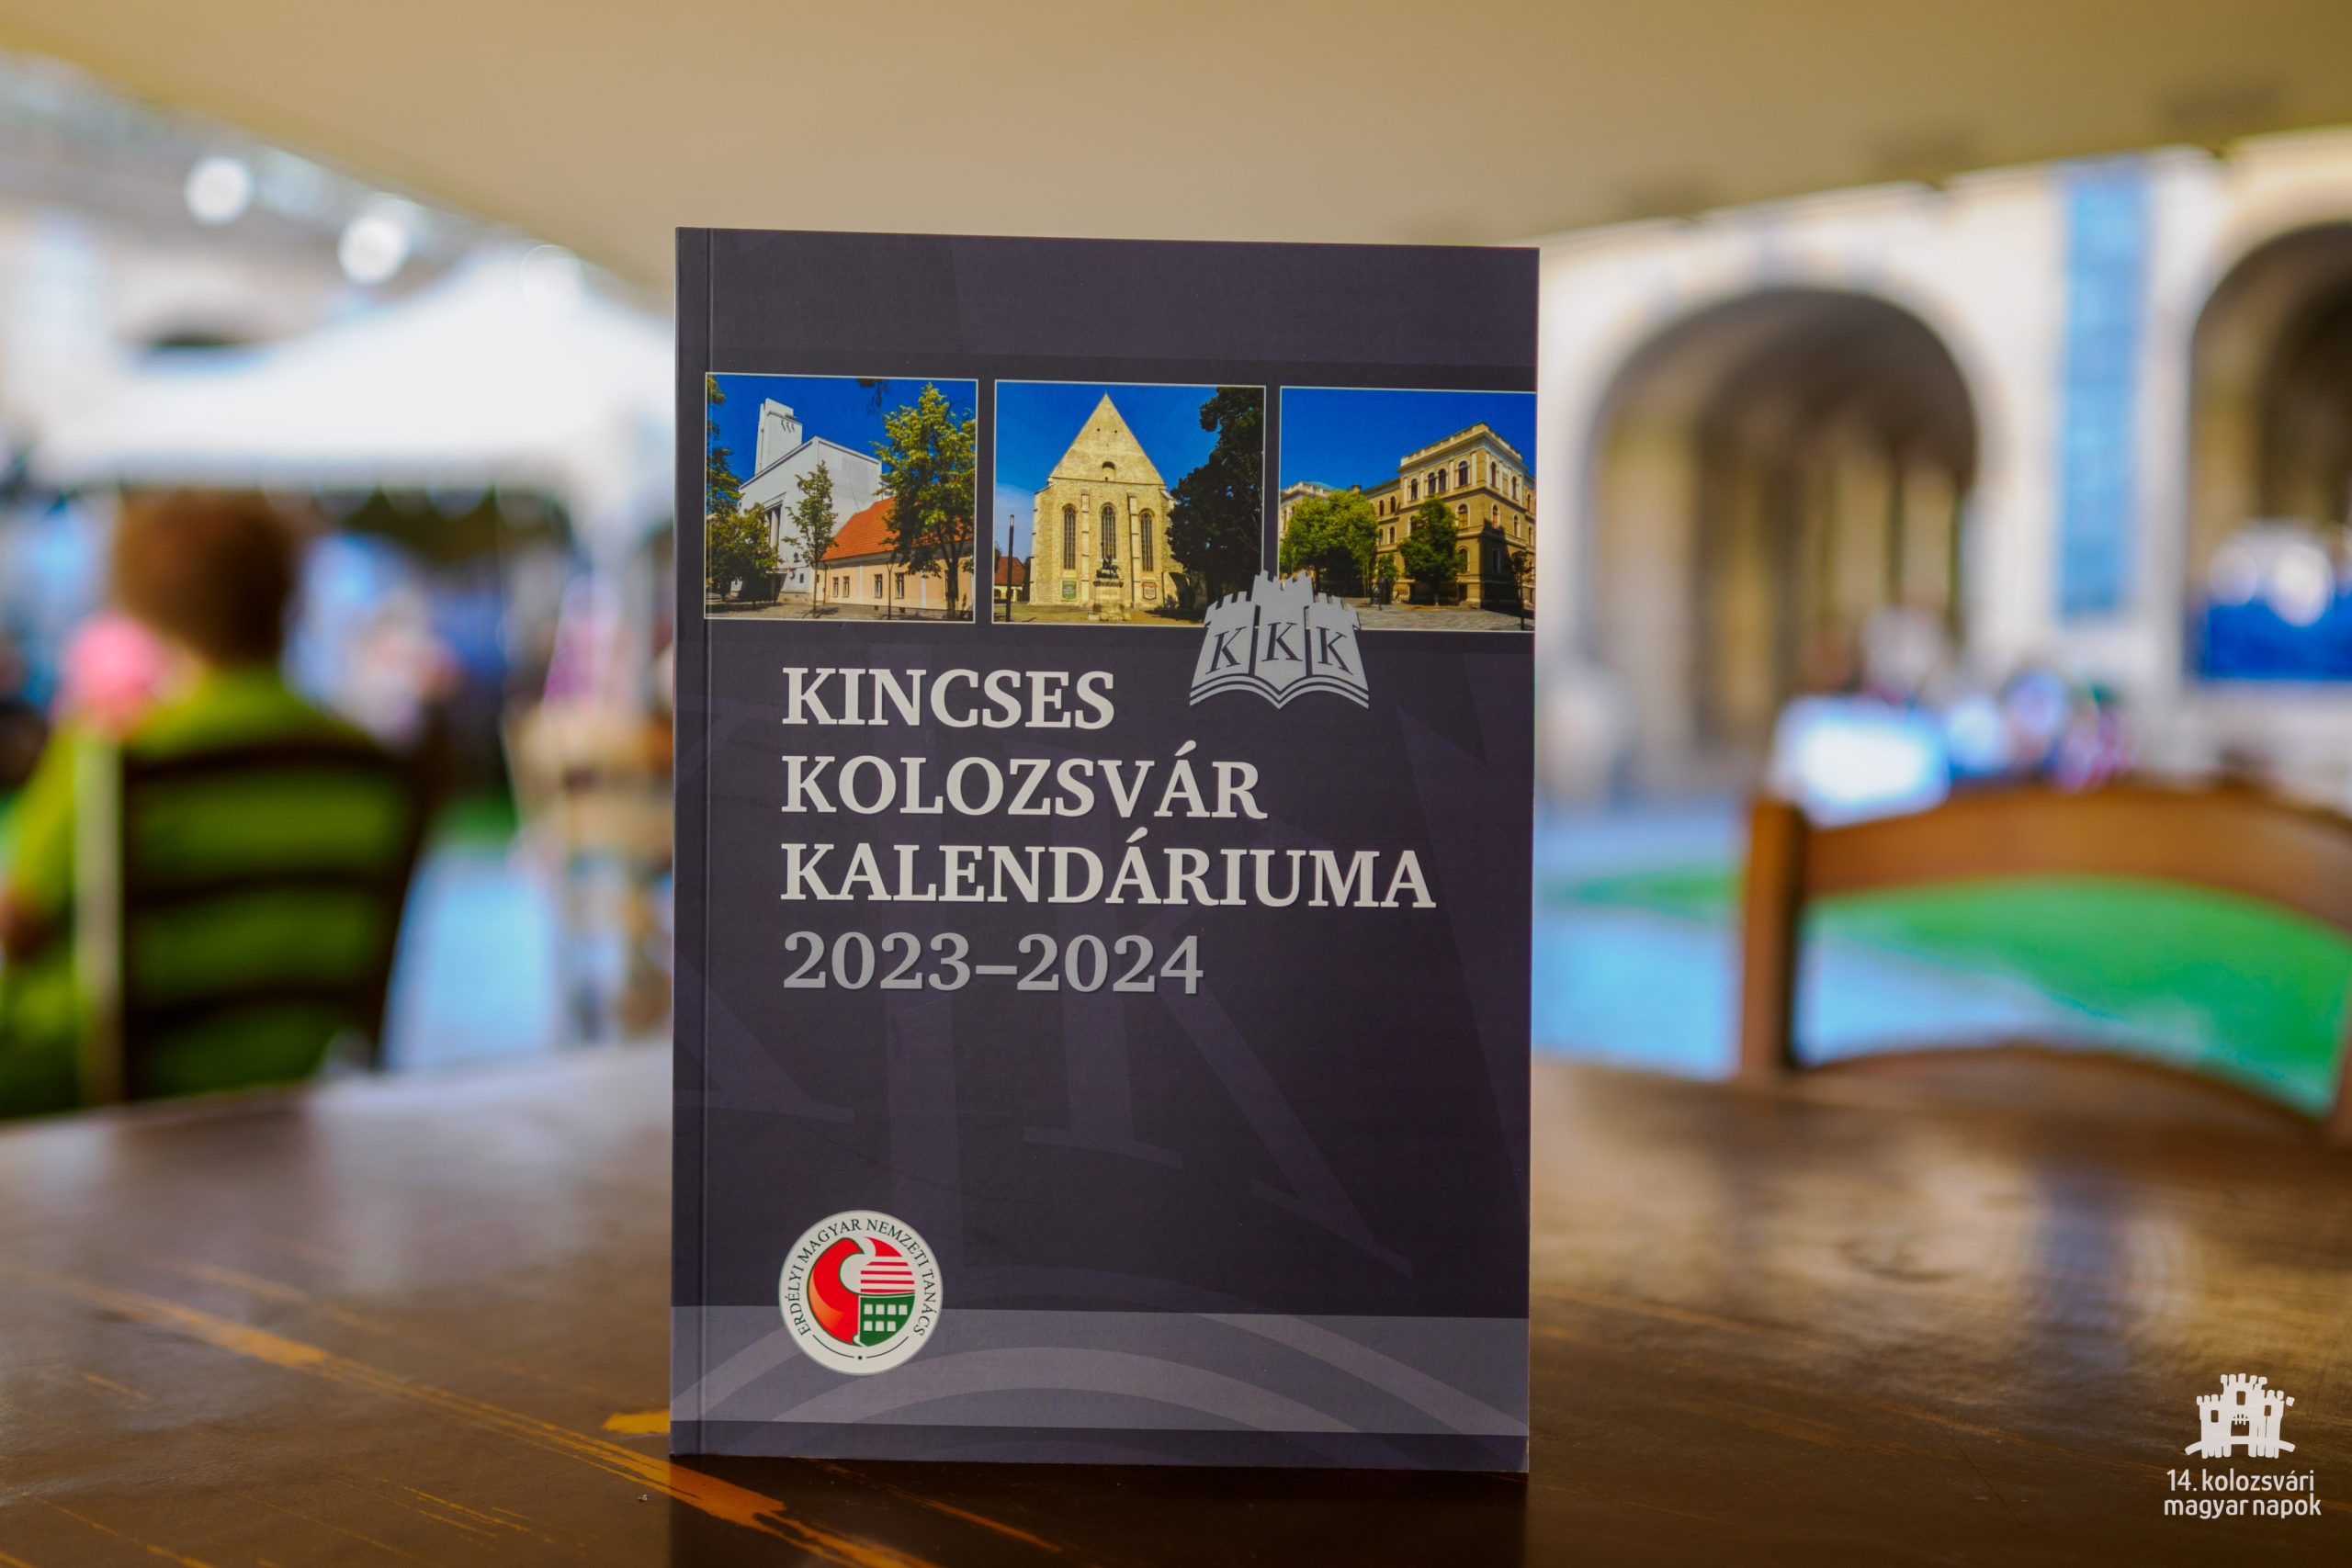 Kincses Kolozsvár Kalendáriuma könyvbemutató a szerzők résztvételével